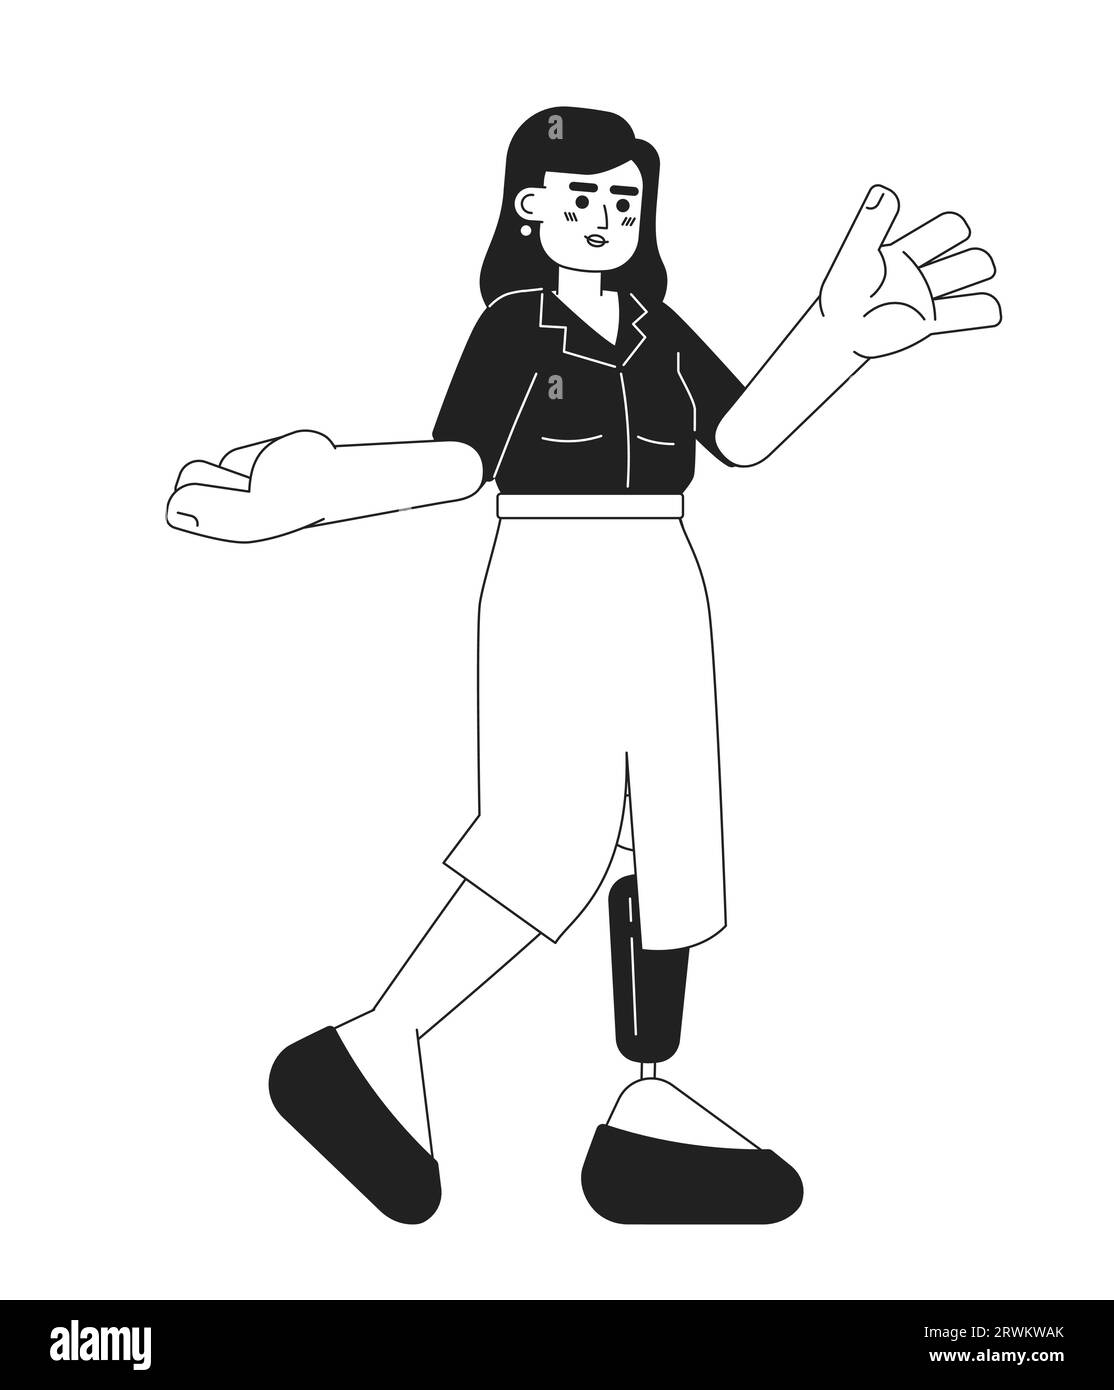 Kaukasische Erwachsene Frau Prothese Bein gestikulierende schwarz-weiße 2D-Zeichentrickfigur Stock Vektor